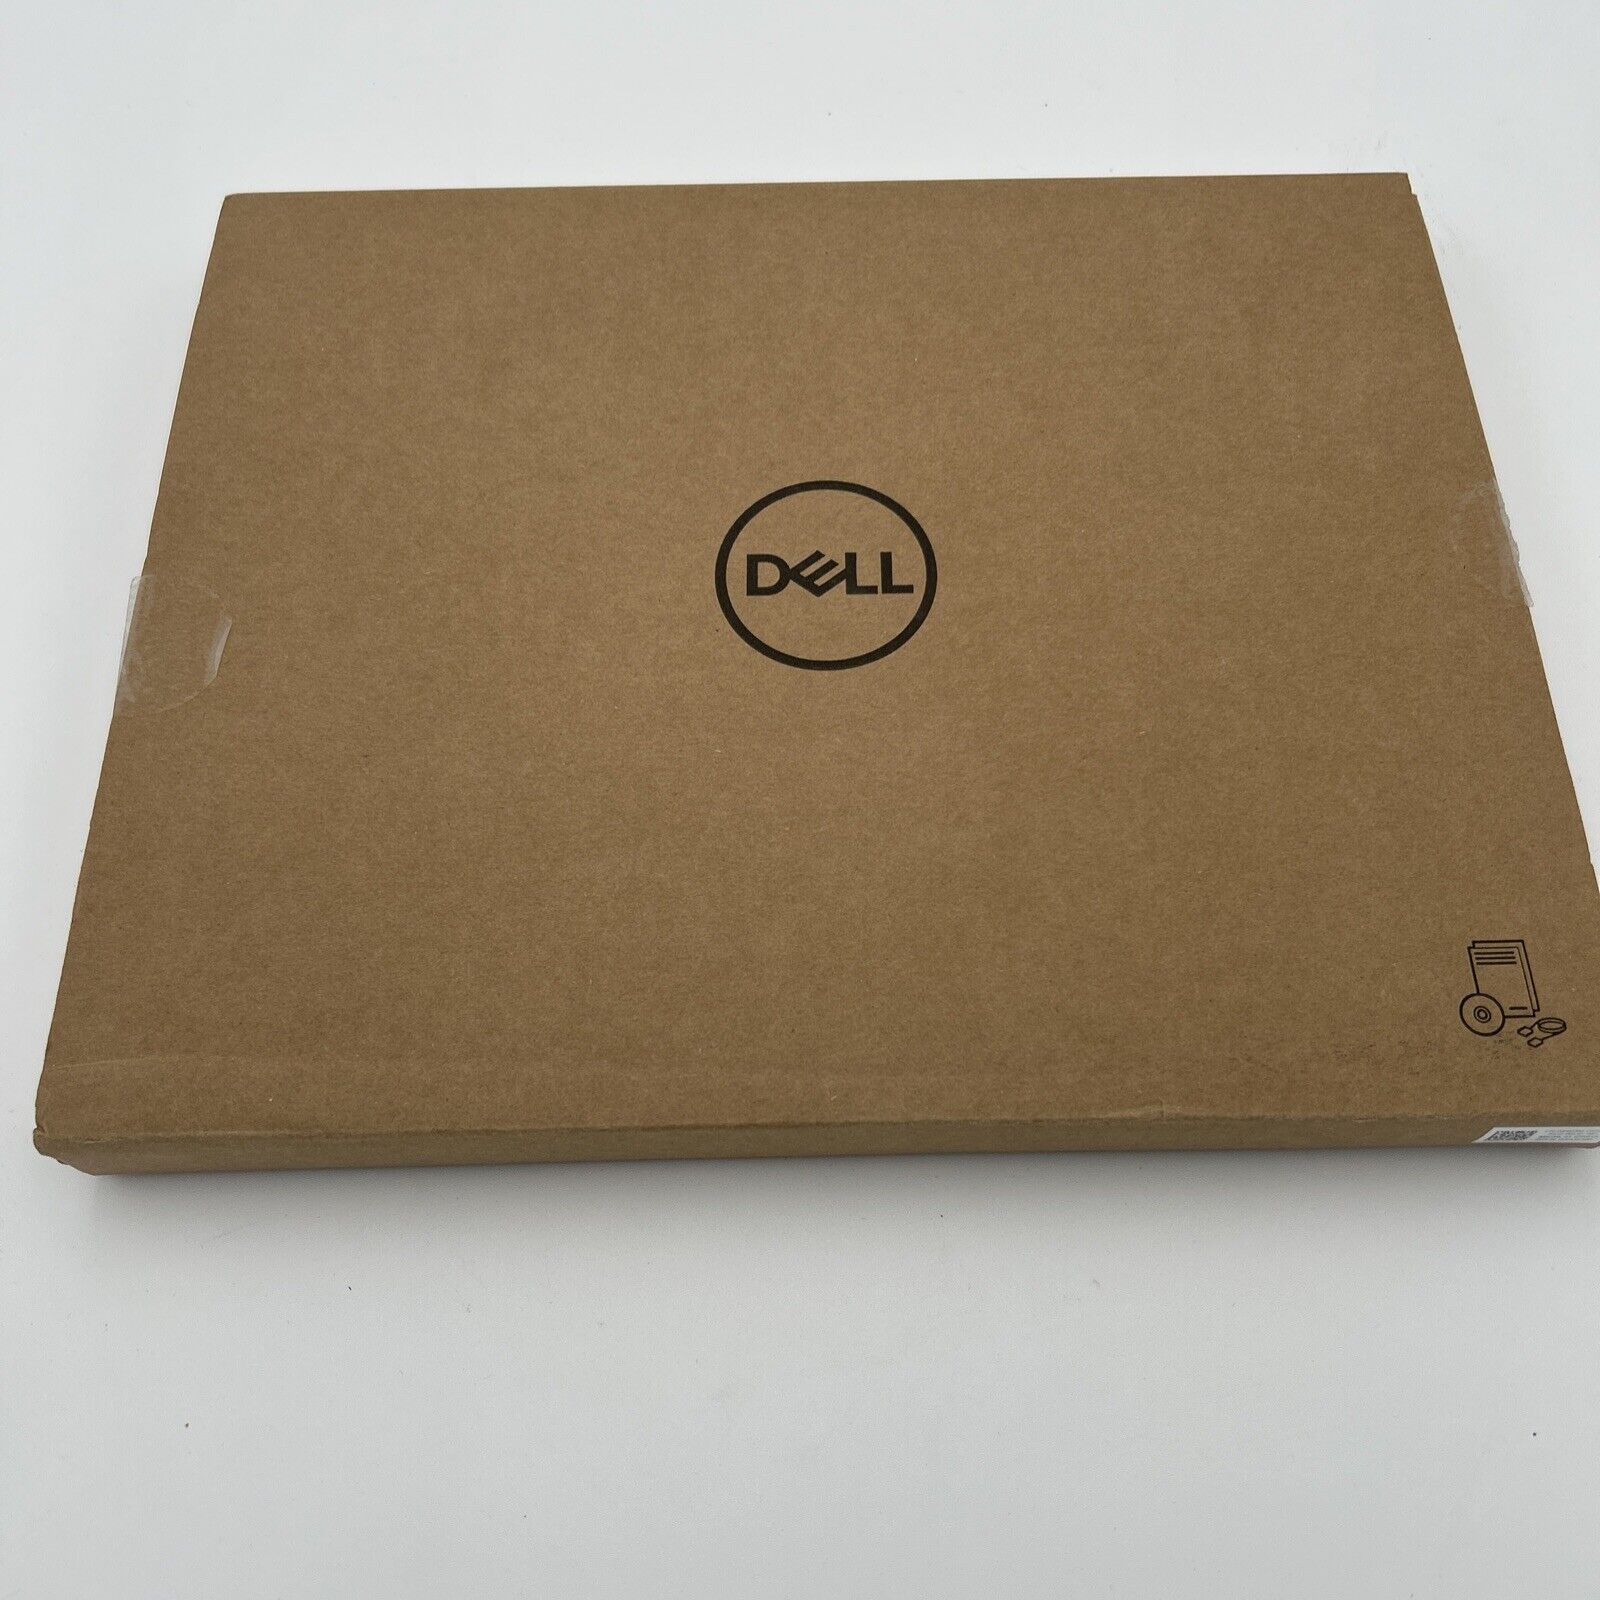  Genuine Dell Keyboards Model: K18M Keyboard  New Open Box 